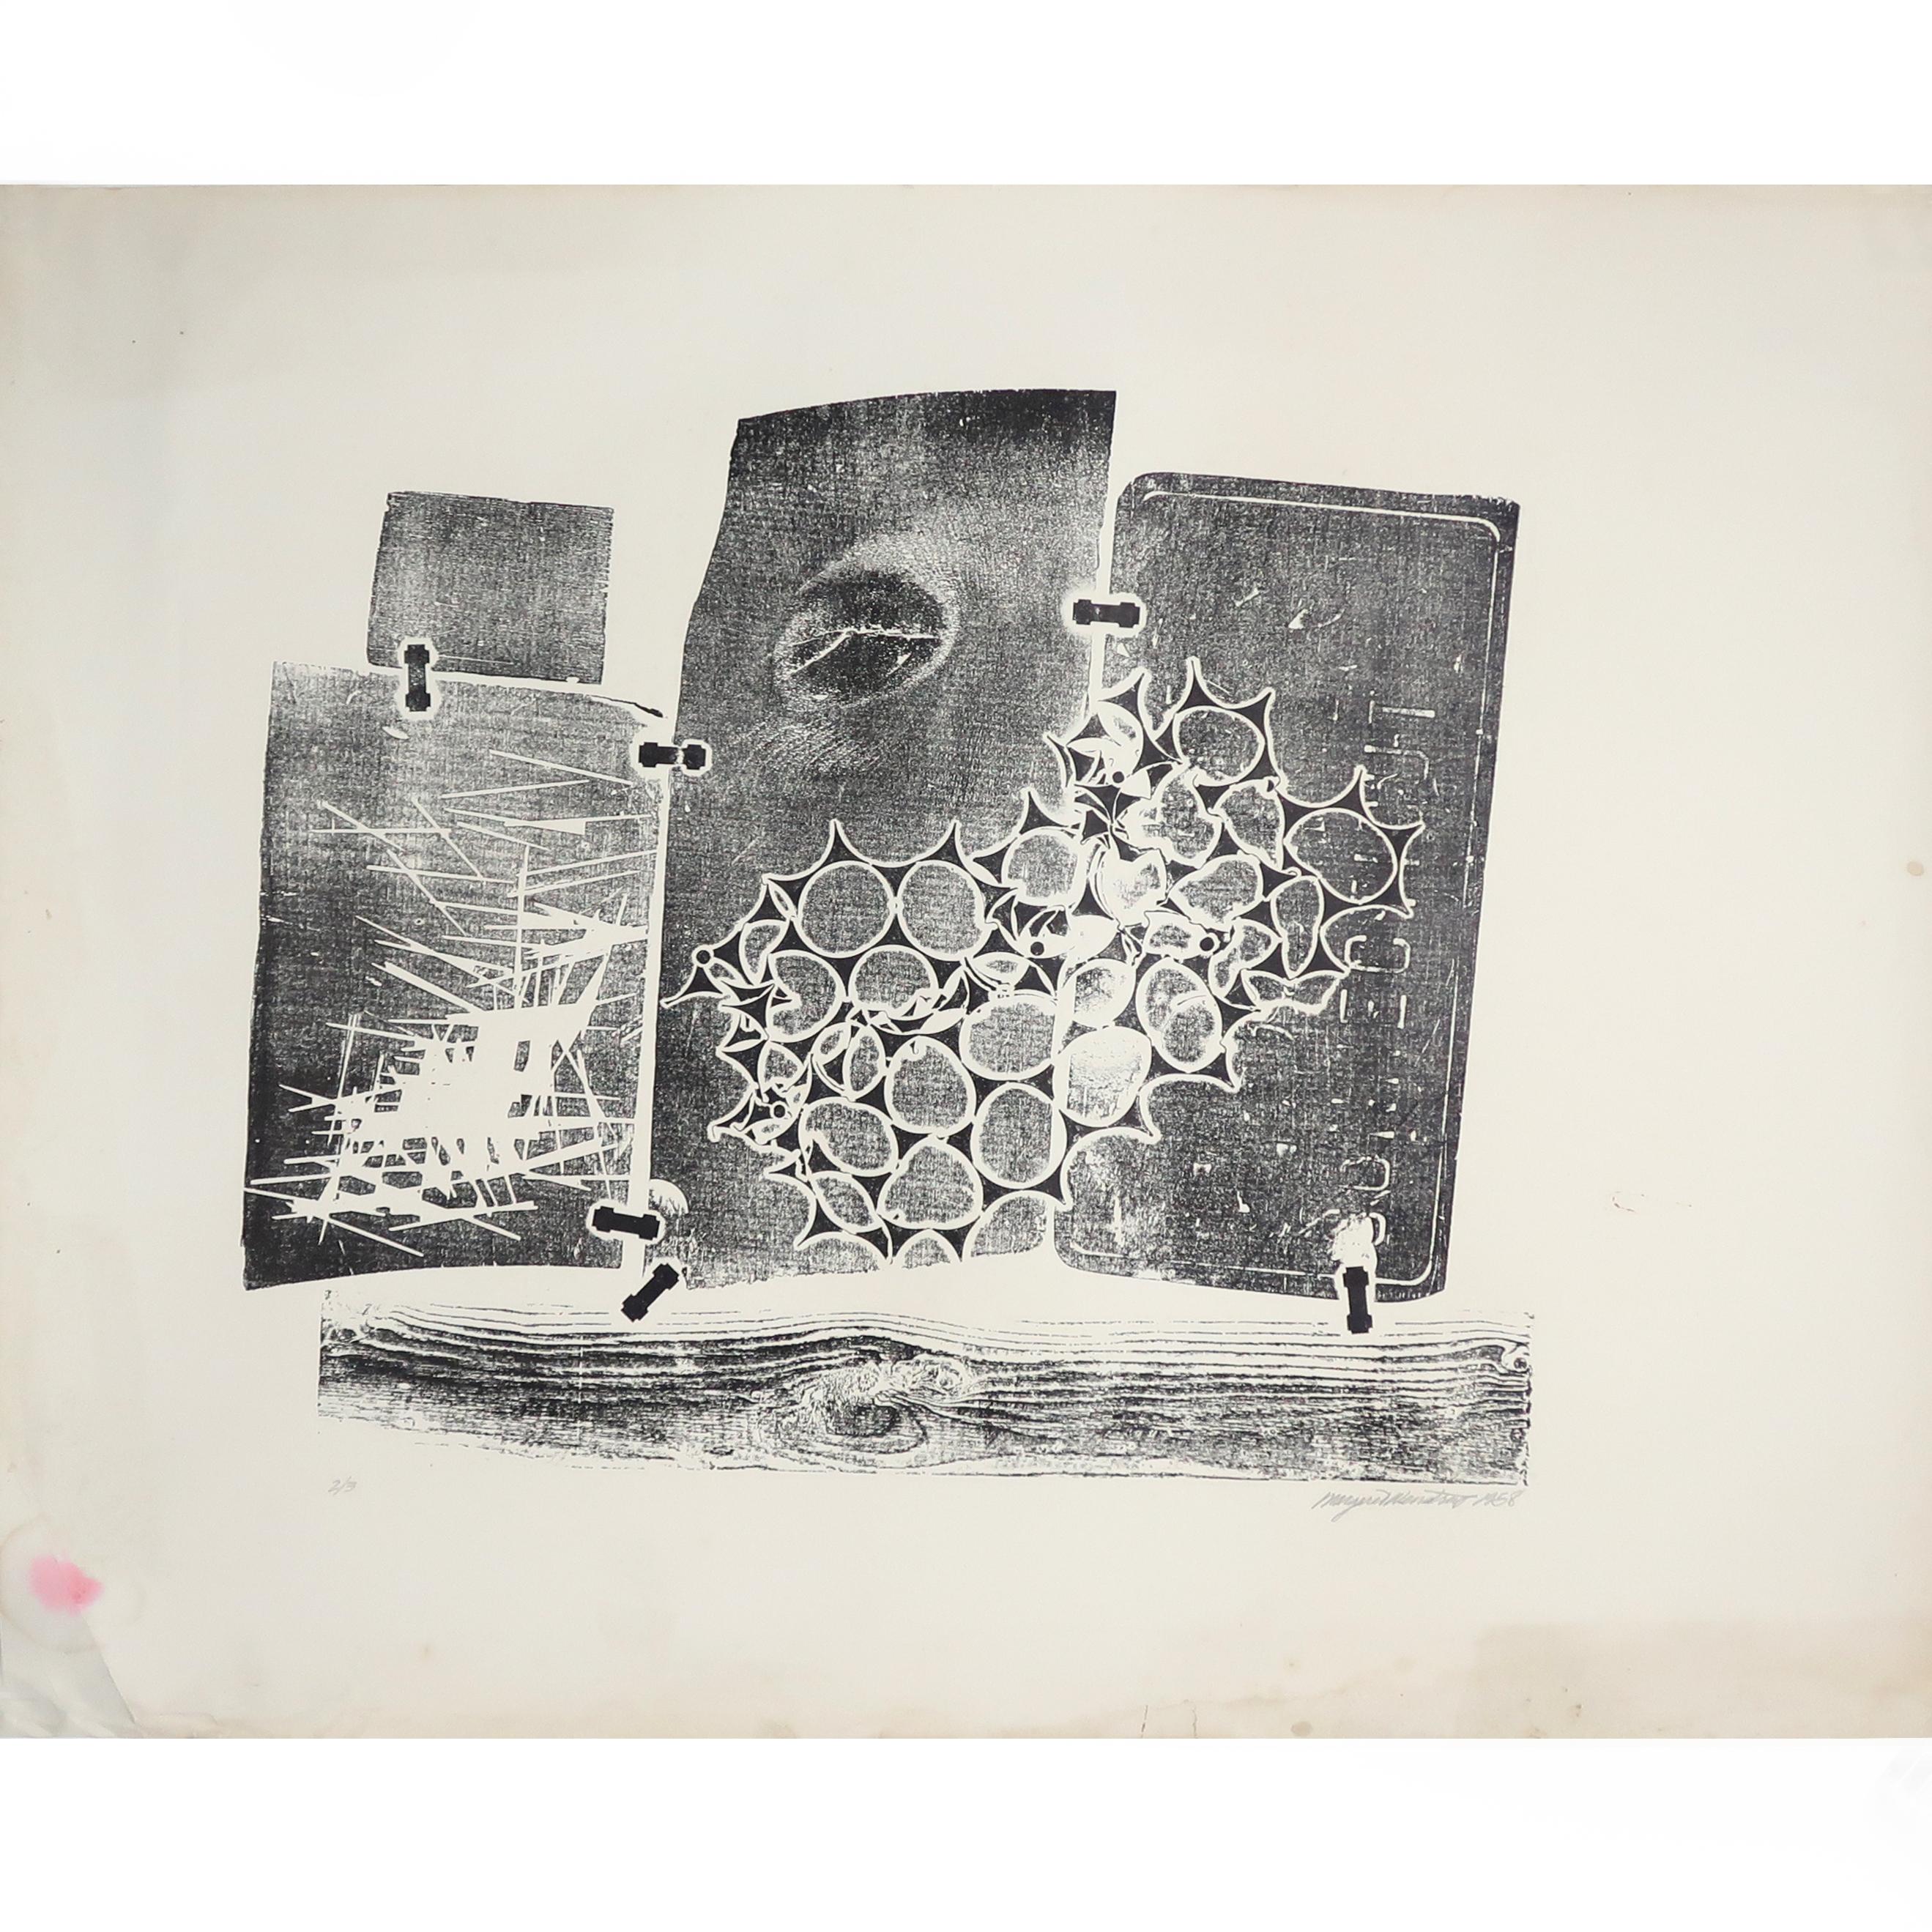 Ein abstrakter Farbholzschnitt ohne Titel von Margaret Wenstrup (1930-2008), datiert 1958. Wenstrup war ein bekannter Künstler aus Cincinnati, OH, der an der Art Academy of Cincinnati studierte und als Pionier des Mid-Century Modernism und der Op